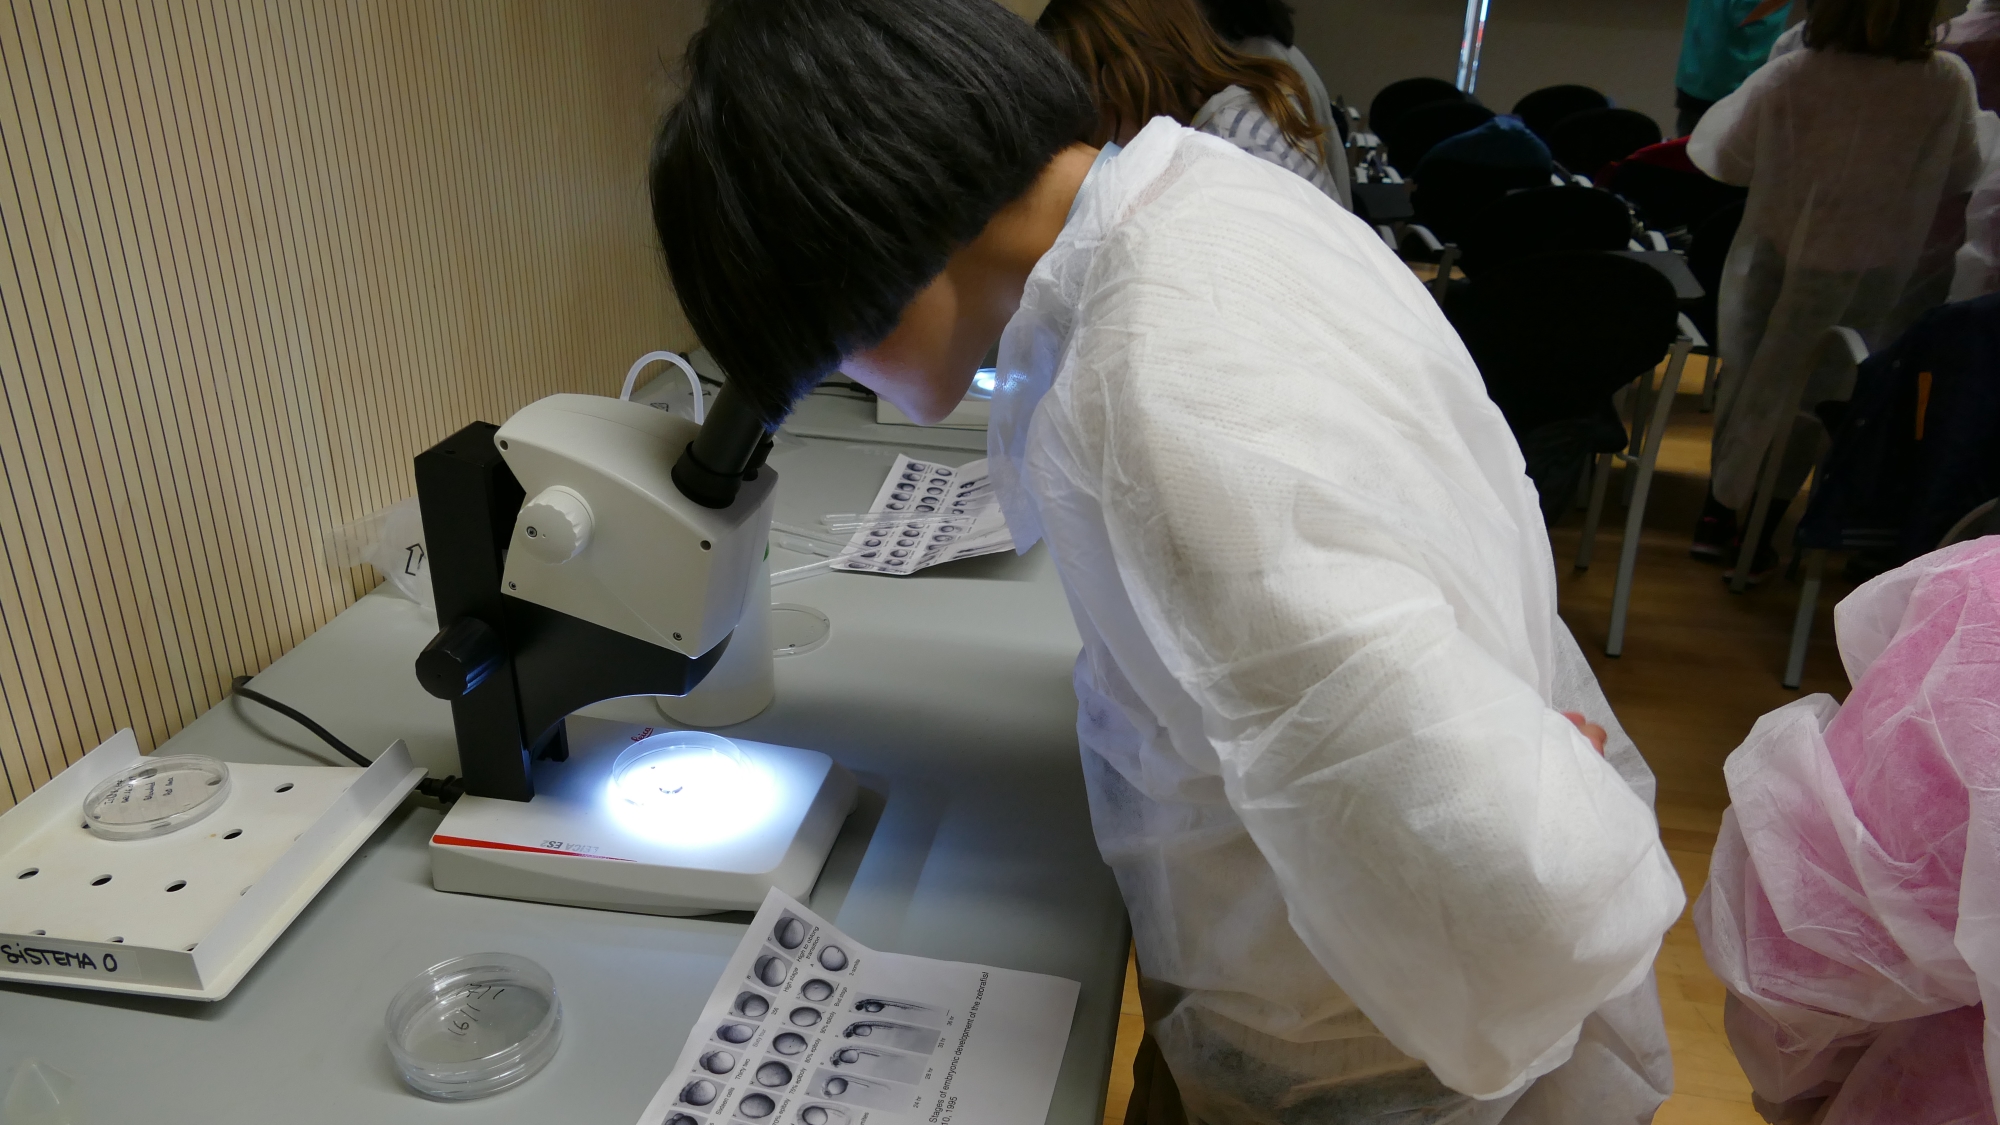 Estudiant observant embrions de peix zebra, en diferents fases del desenvolupament, a través del microscopi.